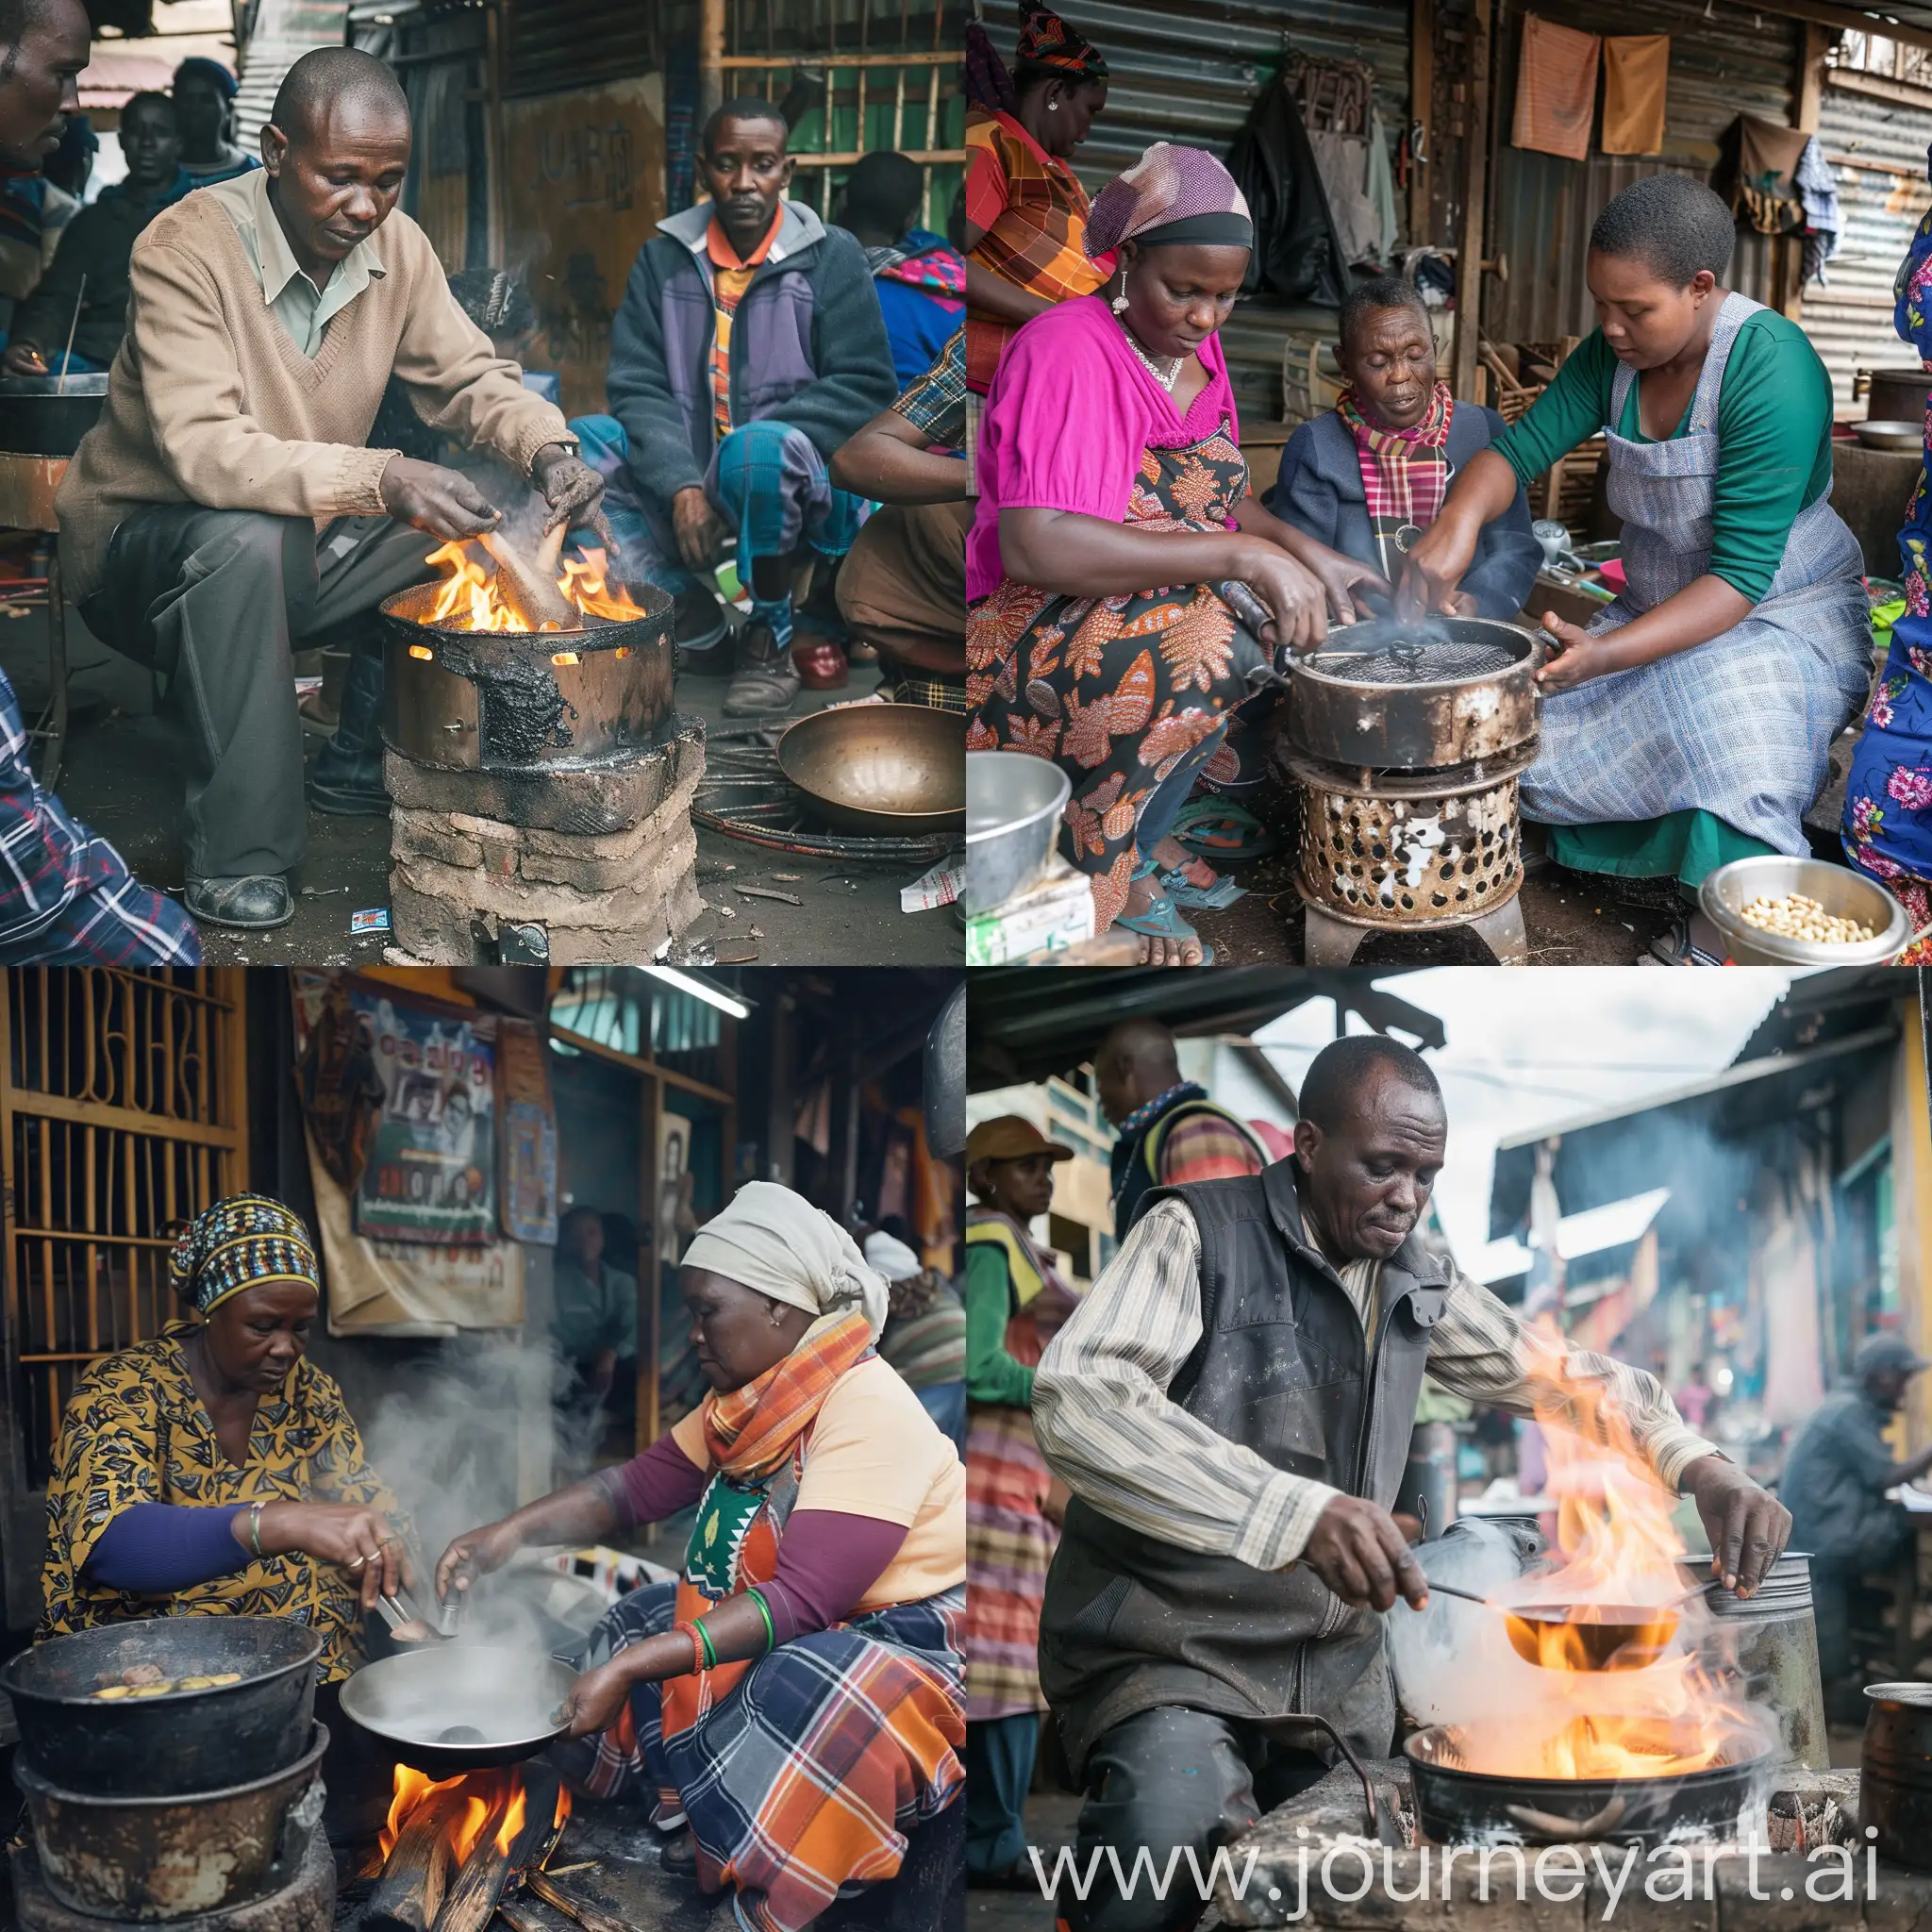 informal sector artisans in jua kali market in Nairobi Kenya makng a jiko